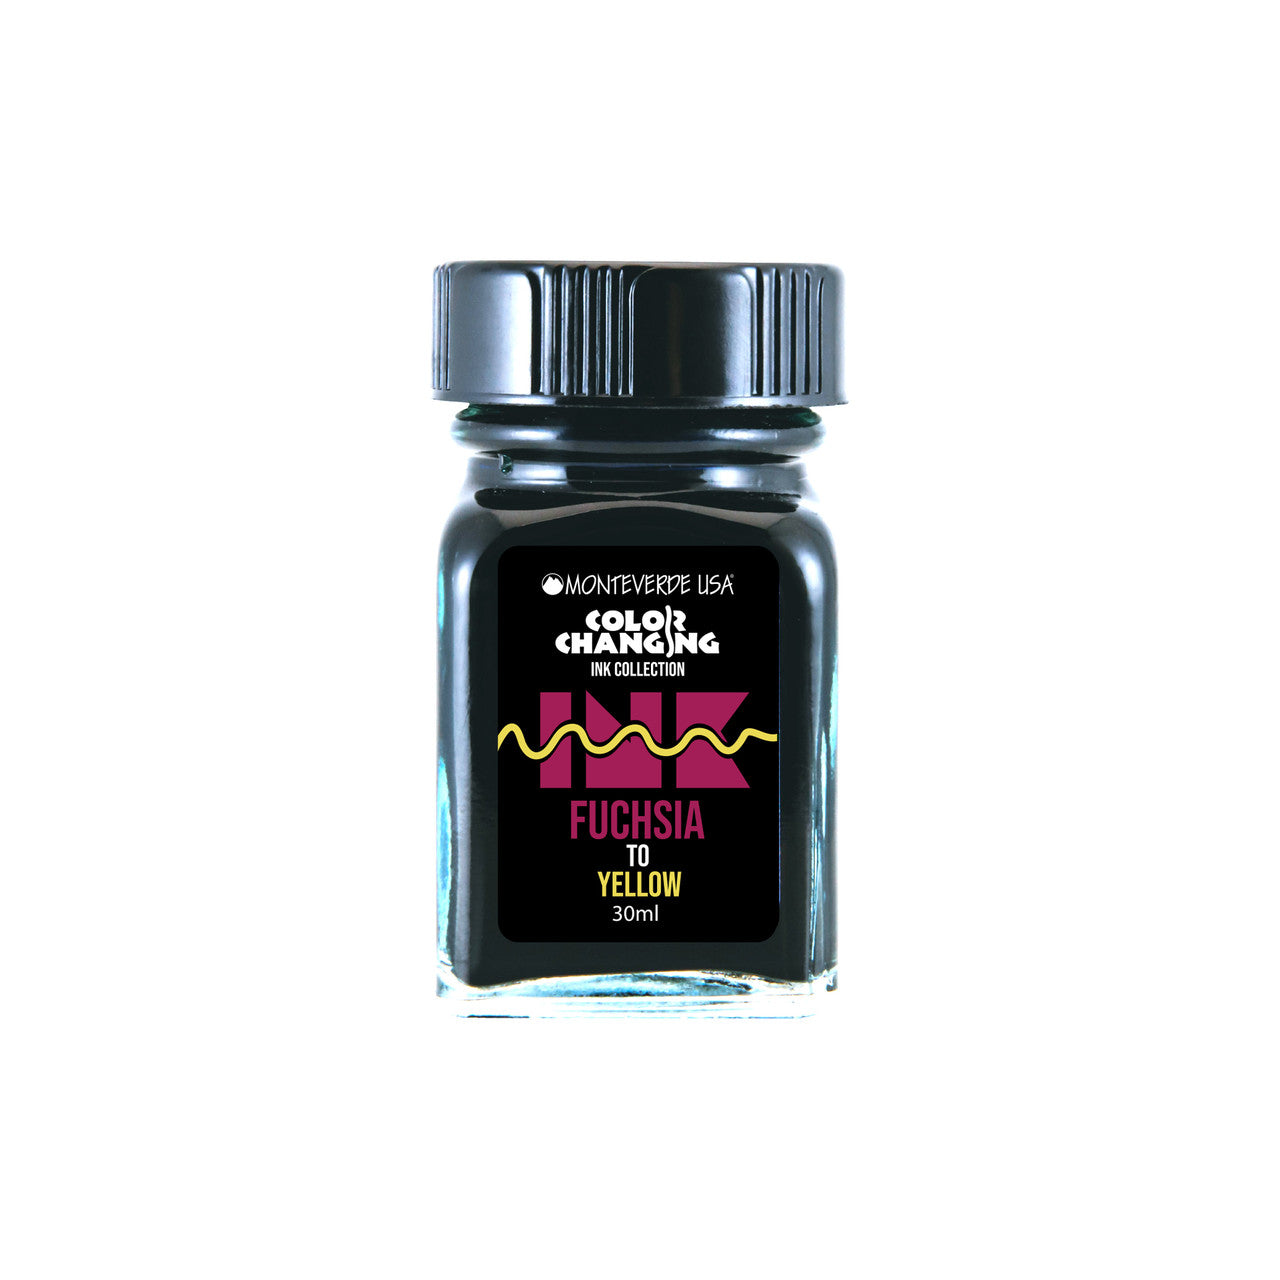 Indian Ink Bottle 30 ml Black 700